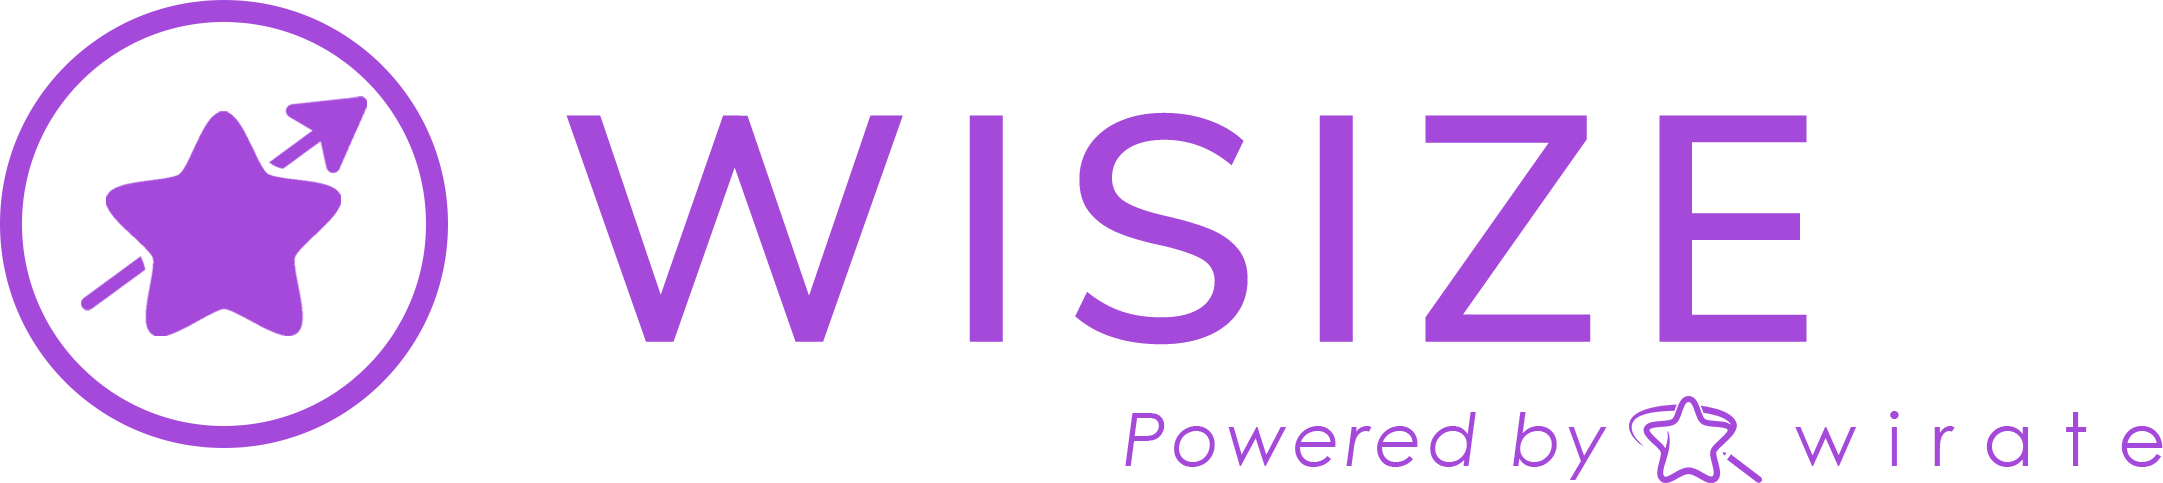 Wisize logo